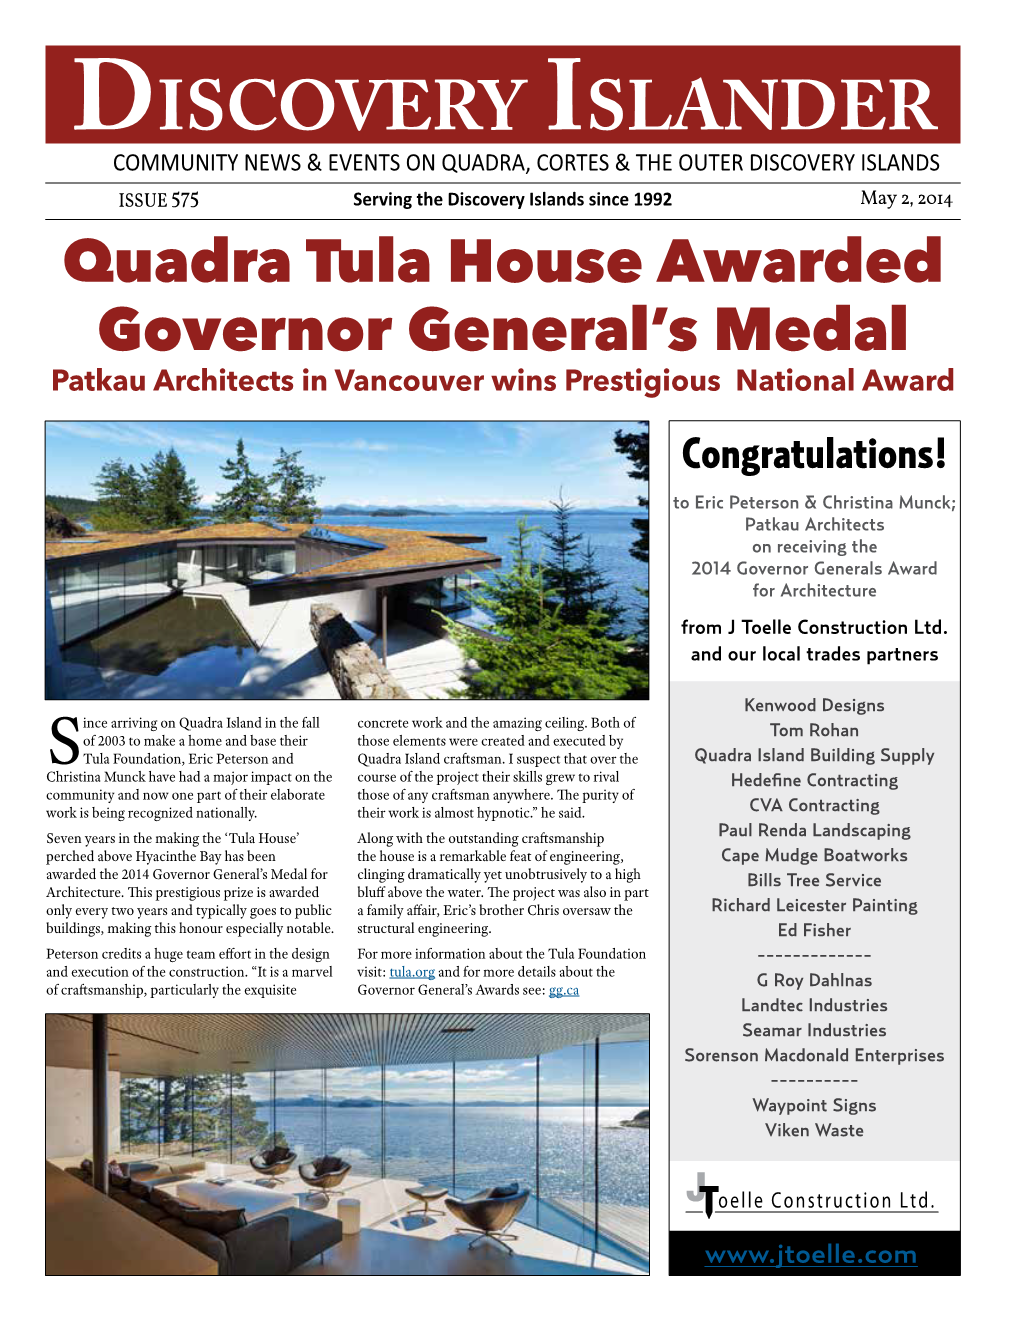 Quadra Tula House Awarded Governor General's Medal